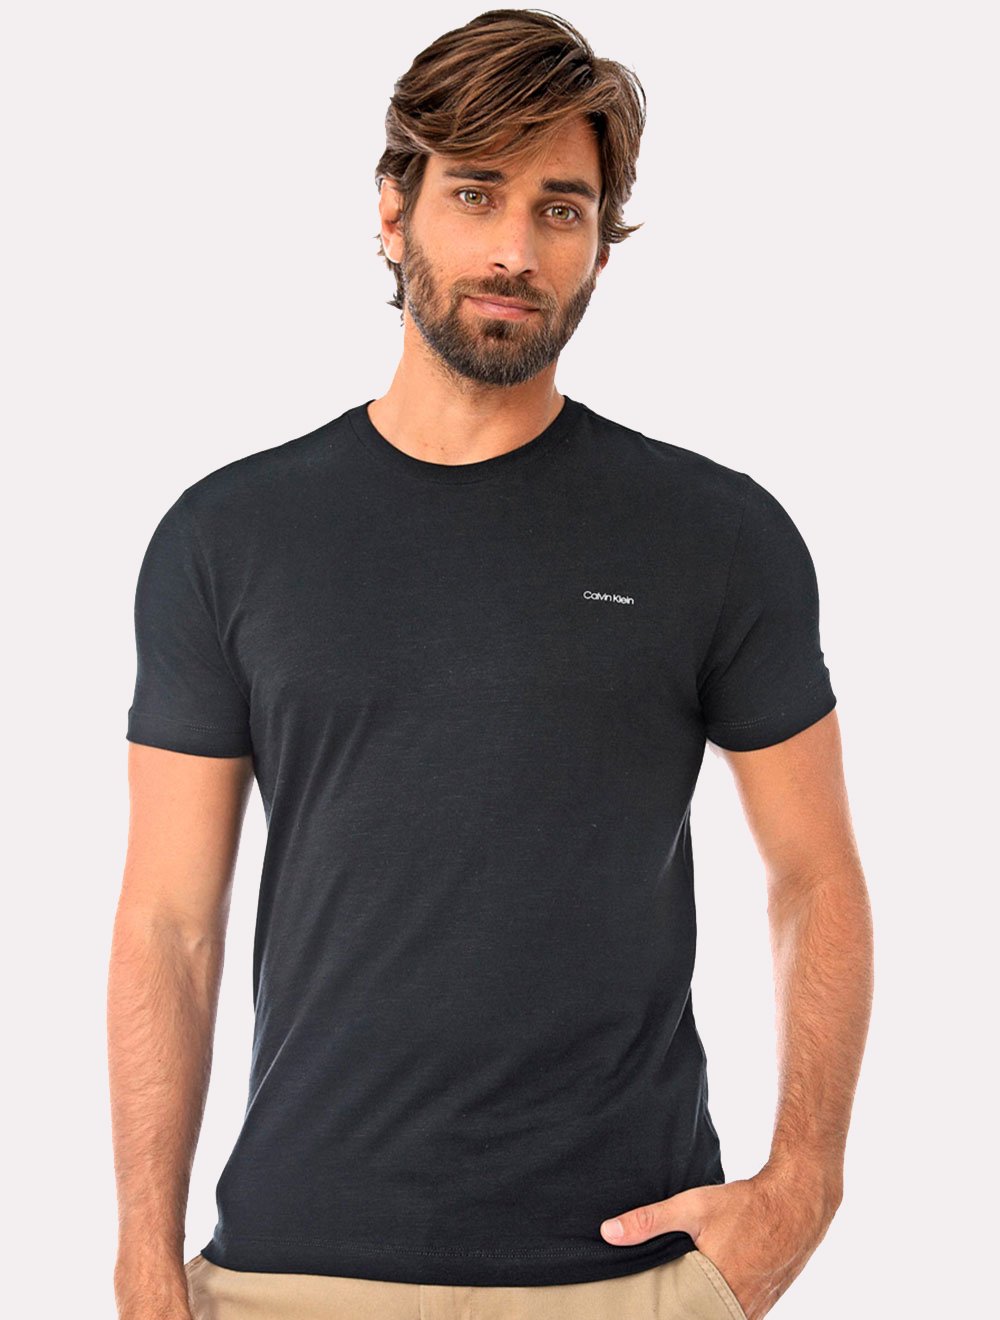 Camiseta Calvin Klein Masculina Slim Logo Flamê Preta